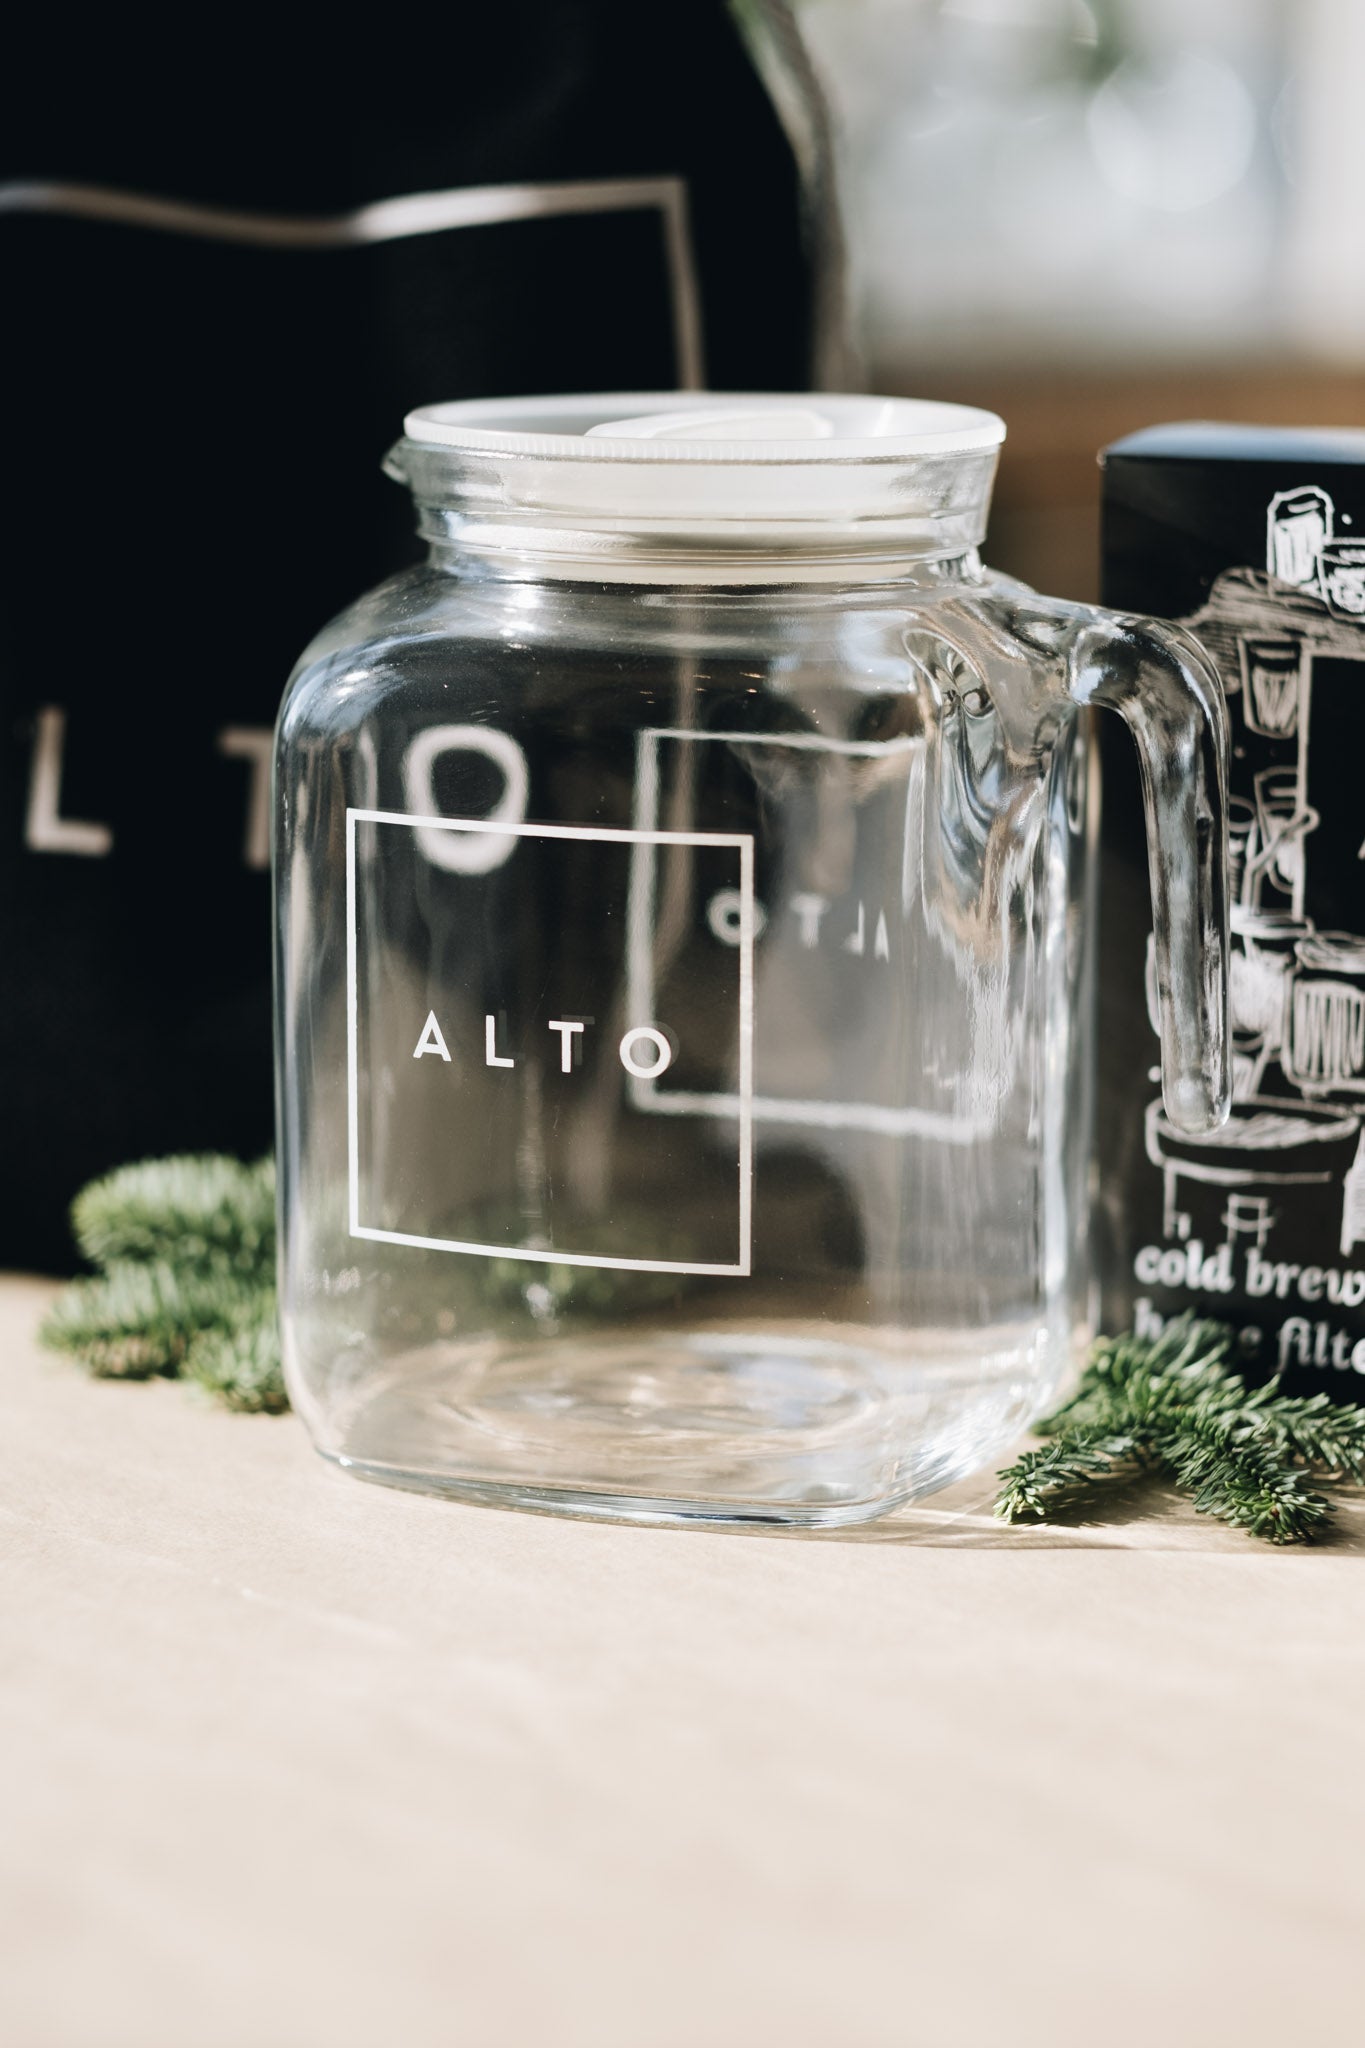 Alto Cold Brew Set – Aldea Coffee